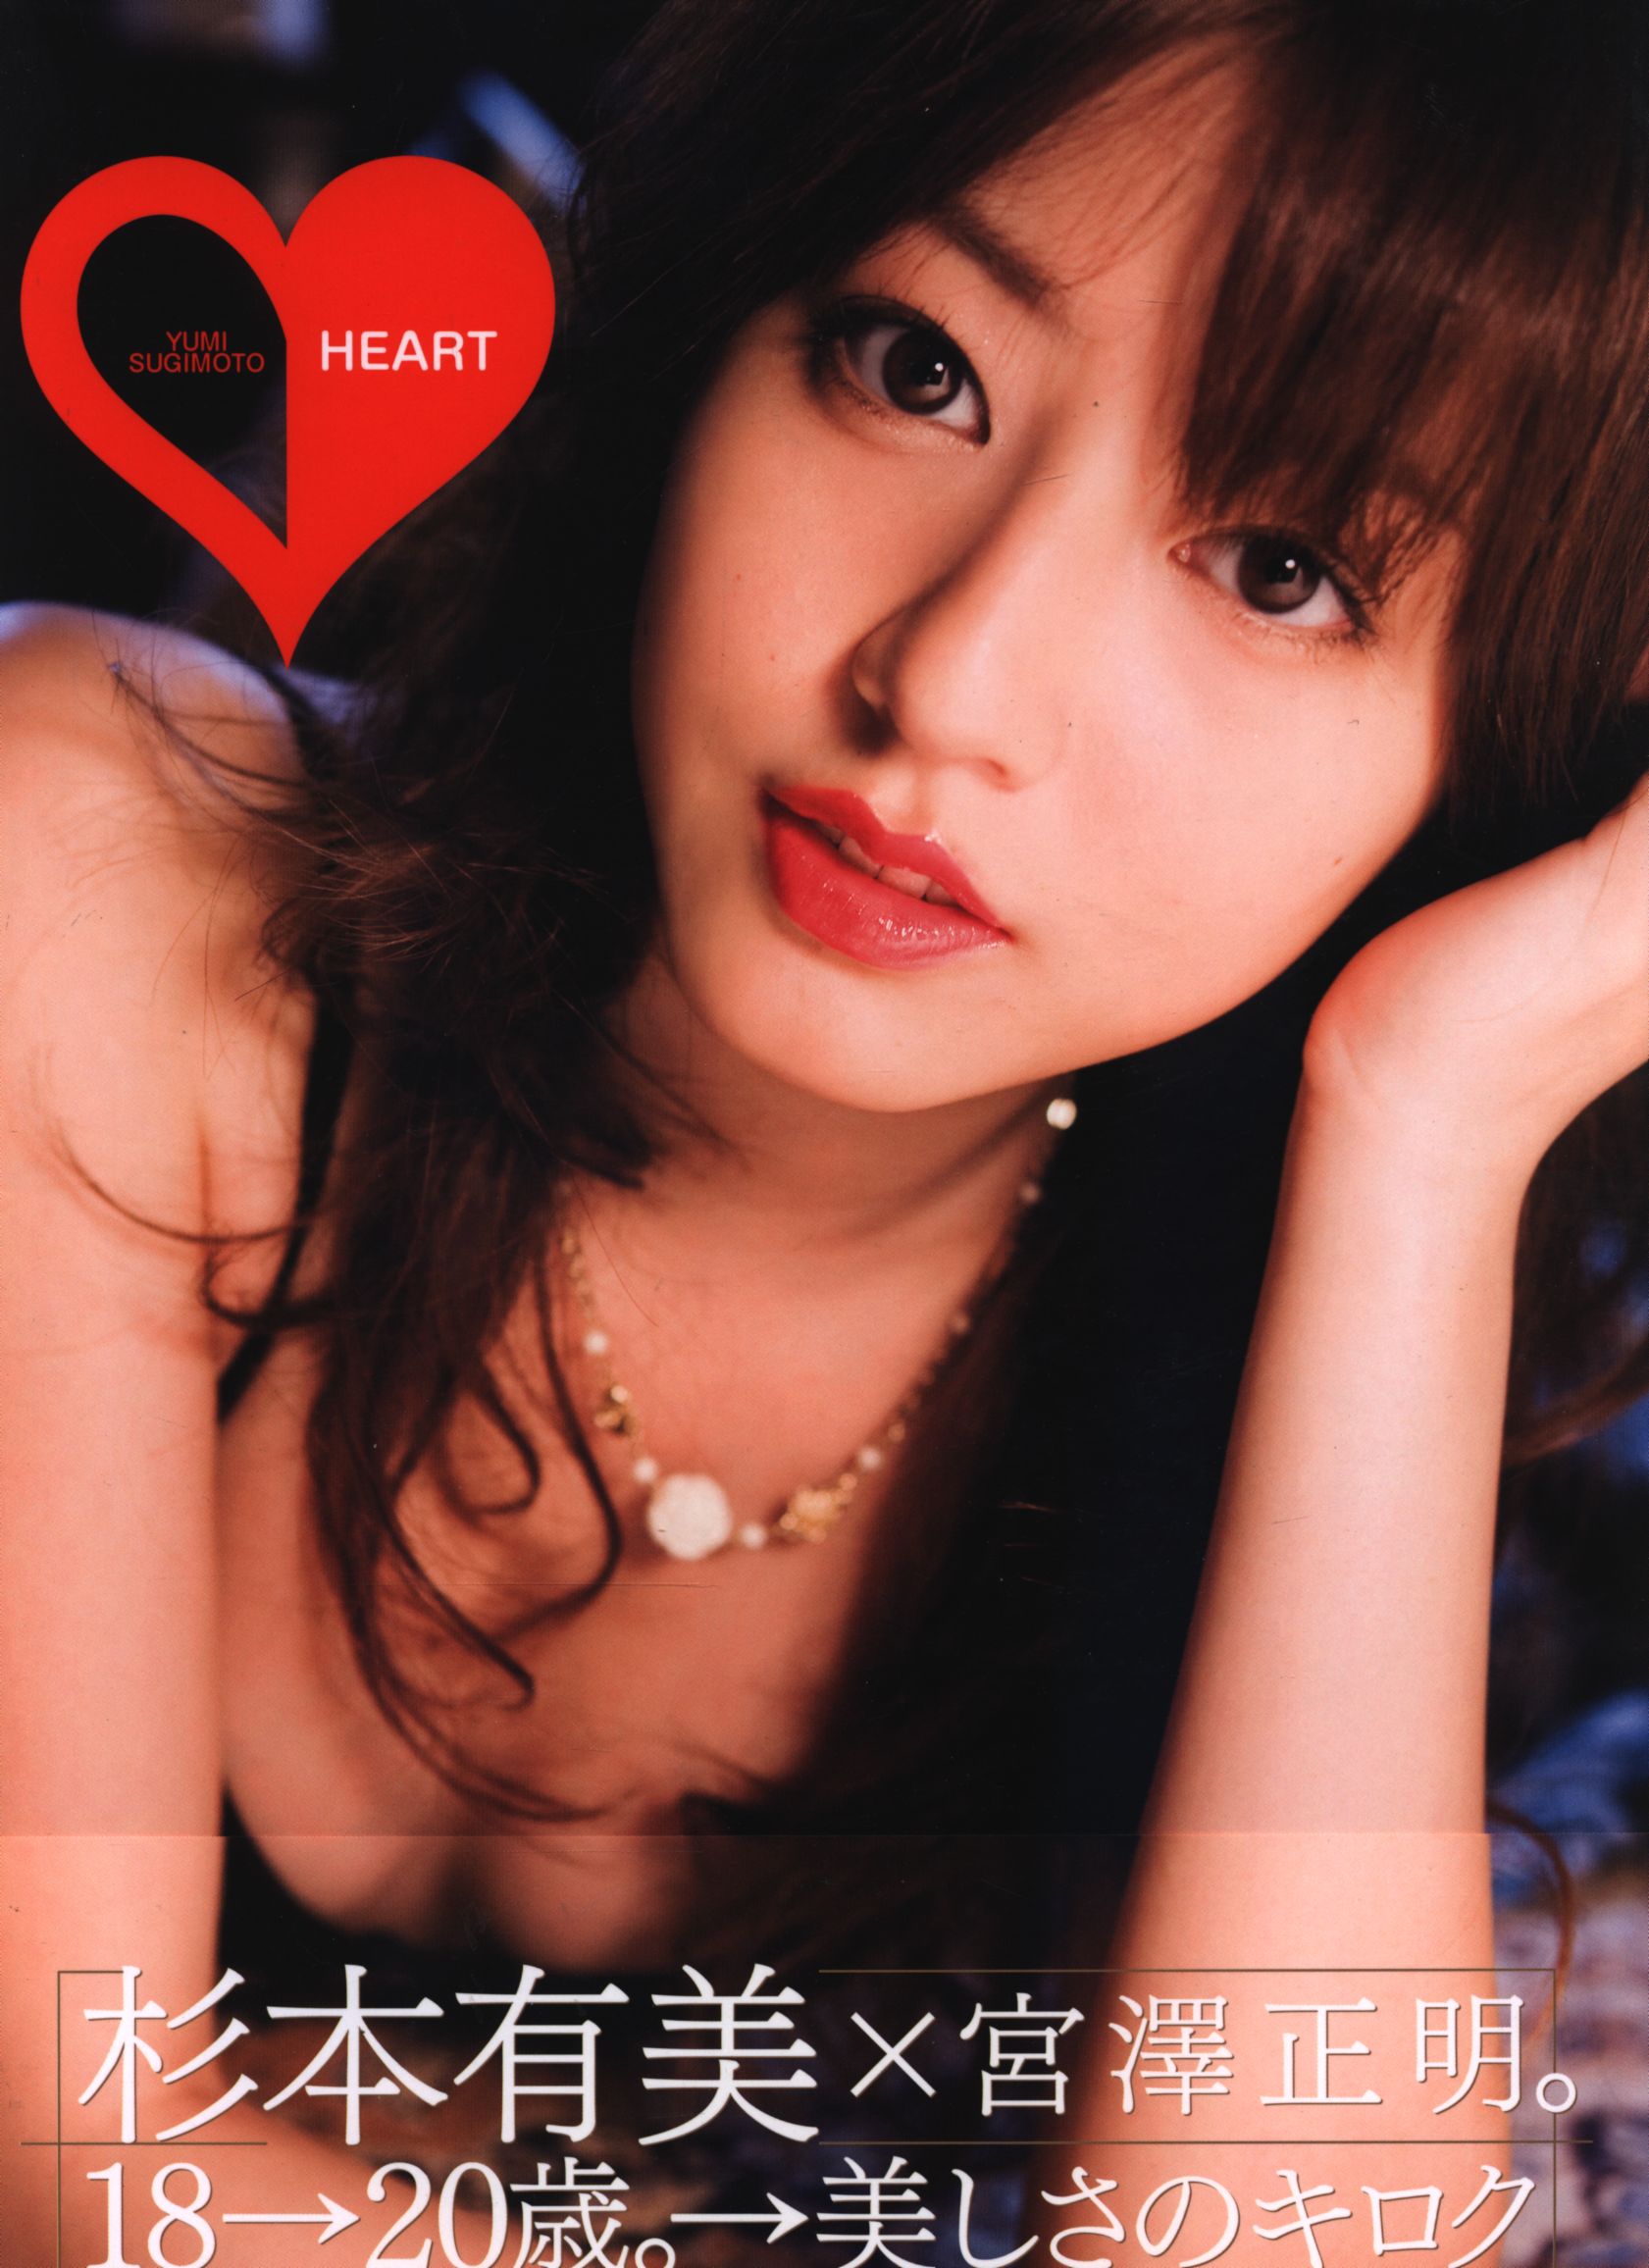 Kodansha Yumi Sugimoto HEART Yumi Sugimoto Photograph Collection |  Mandarake Online Shop